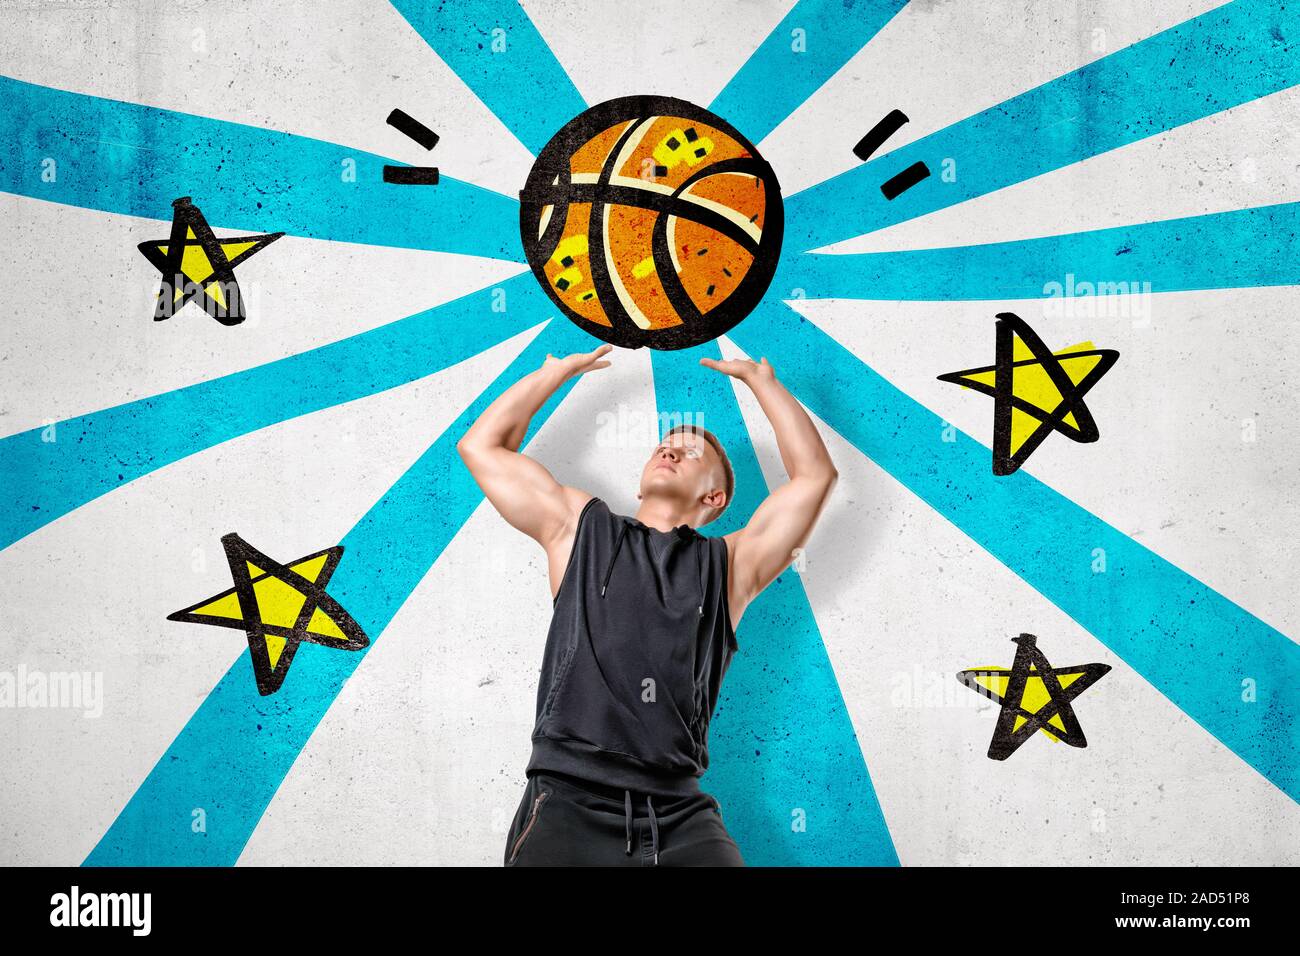 Hombre vestido con camiseta negra arrojando cartoon pelota de baloncesto en franjas azules y estrellas de fondo. Entrenamiento y deportes. Artículos deportivos. Personas y objeto Foto de stock